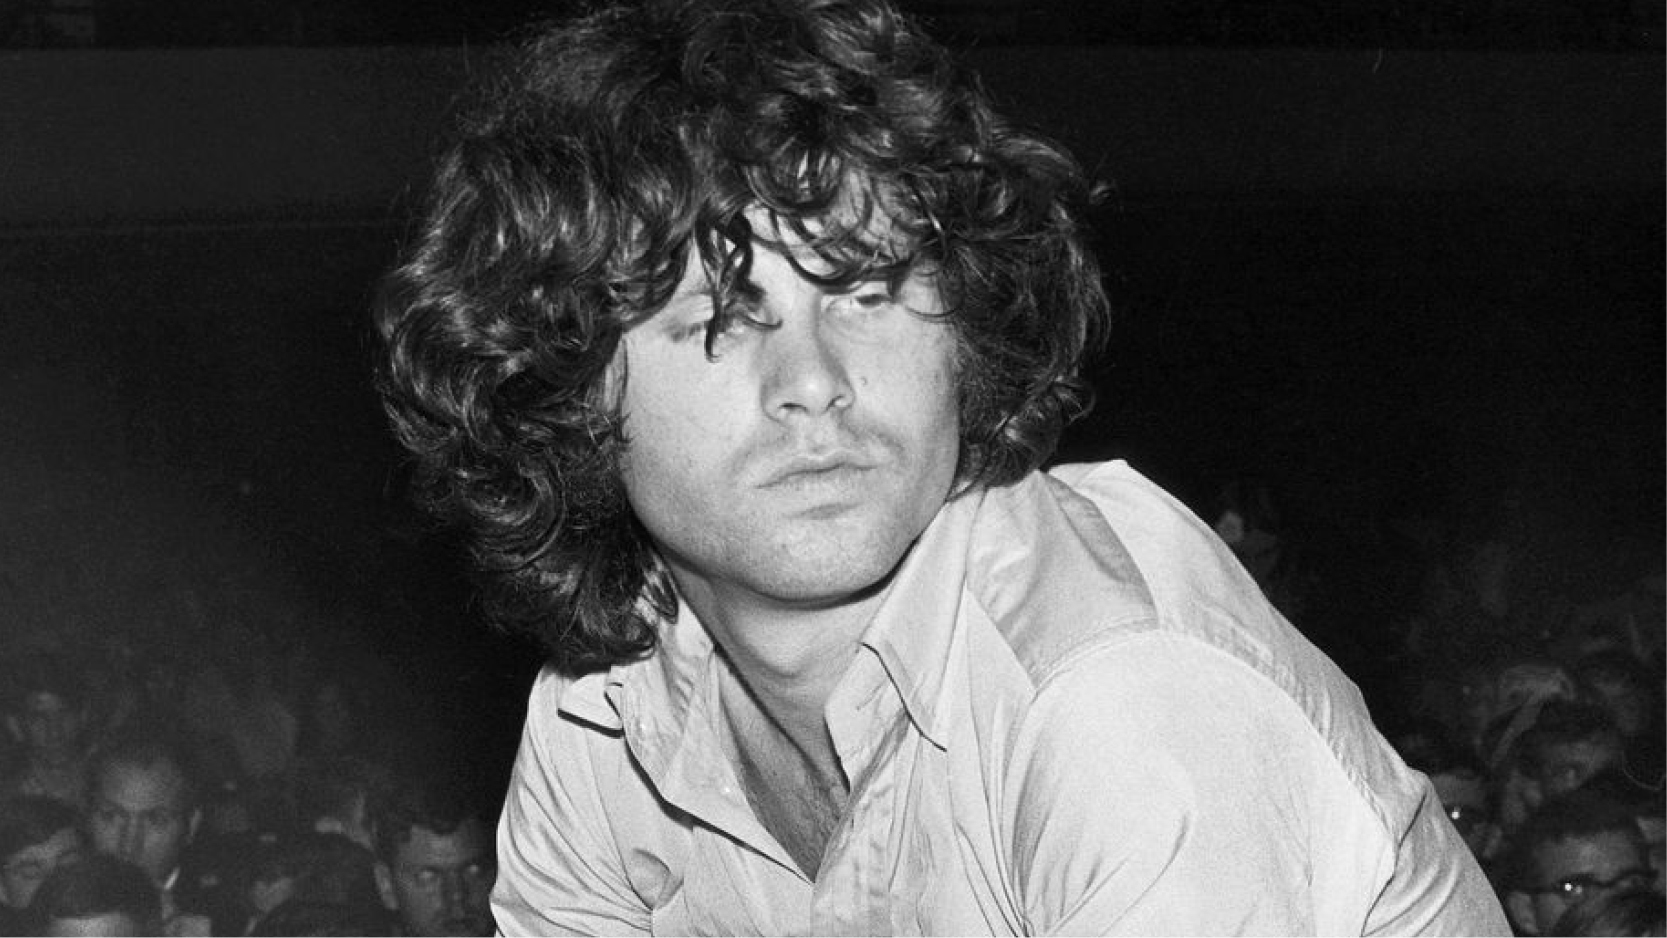 Morre aos 74 anos Ray Manzarek, tecladista da banda The Doors